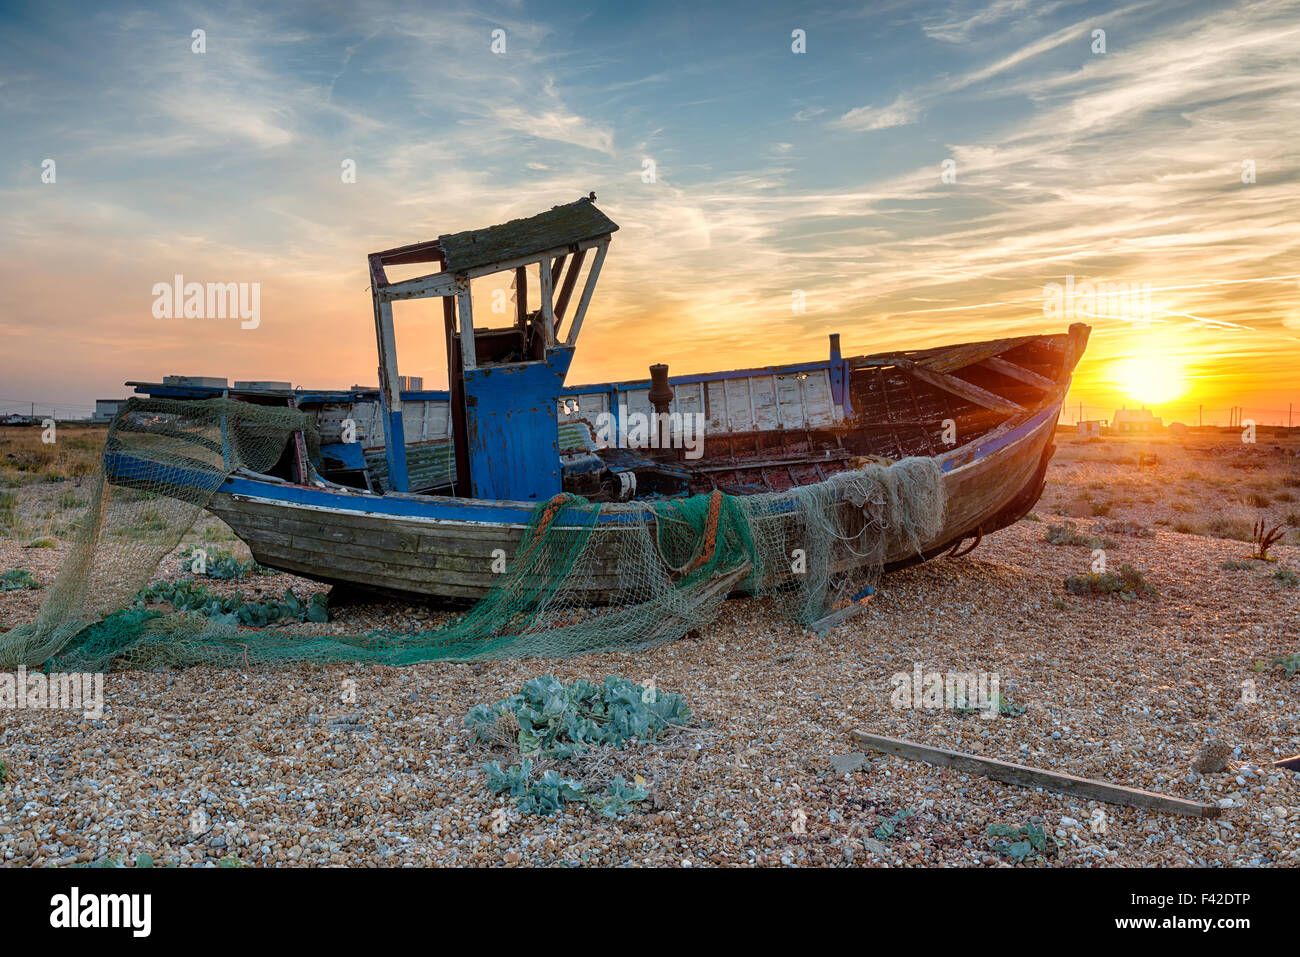 Magnifique coucher de soleil sur un vieux bateau de pêche en bois sur la plage à Dungeness sur la côte du Kent Banque D'Images